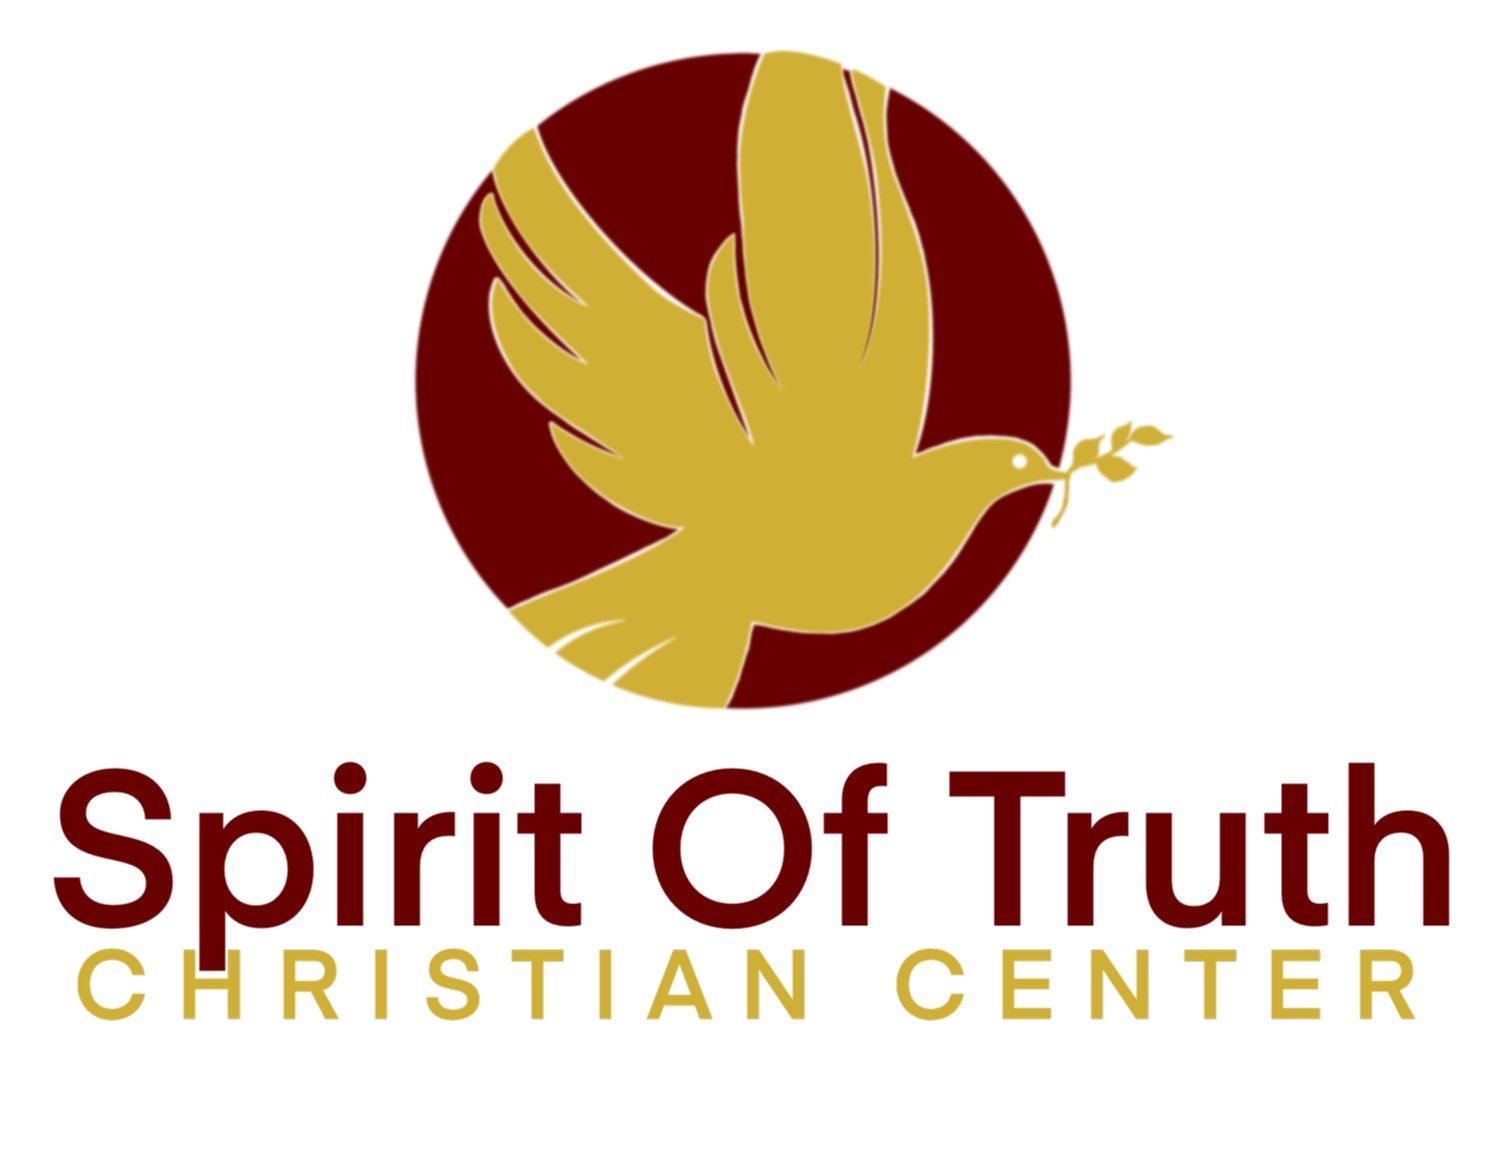 Spirit of Truth Christian Center